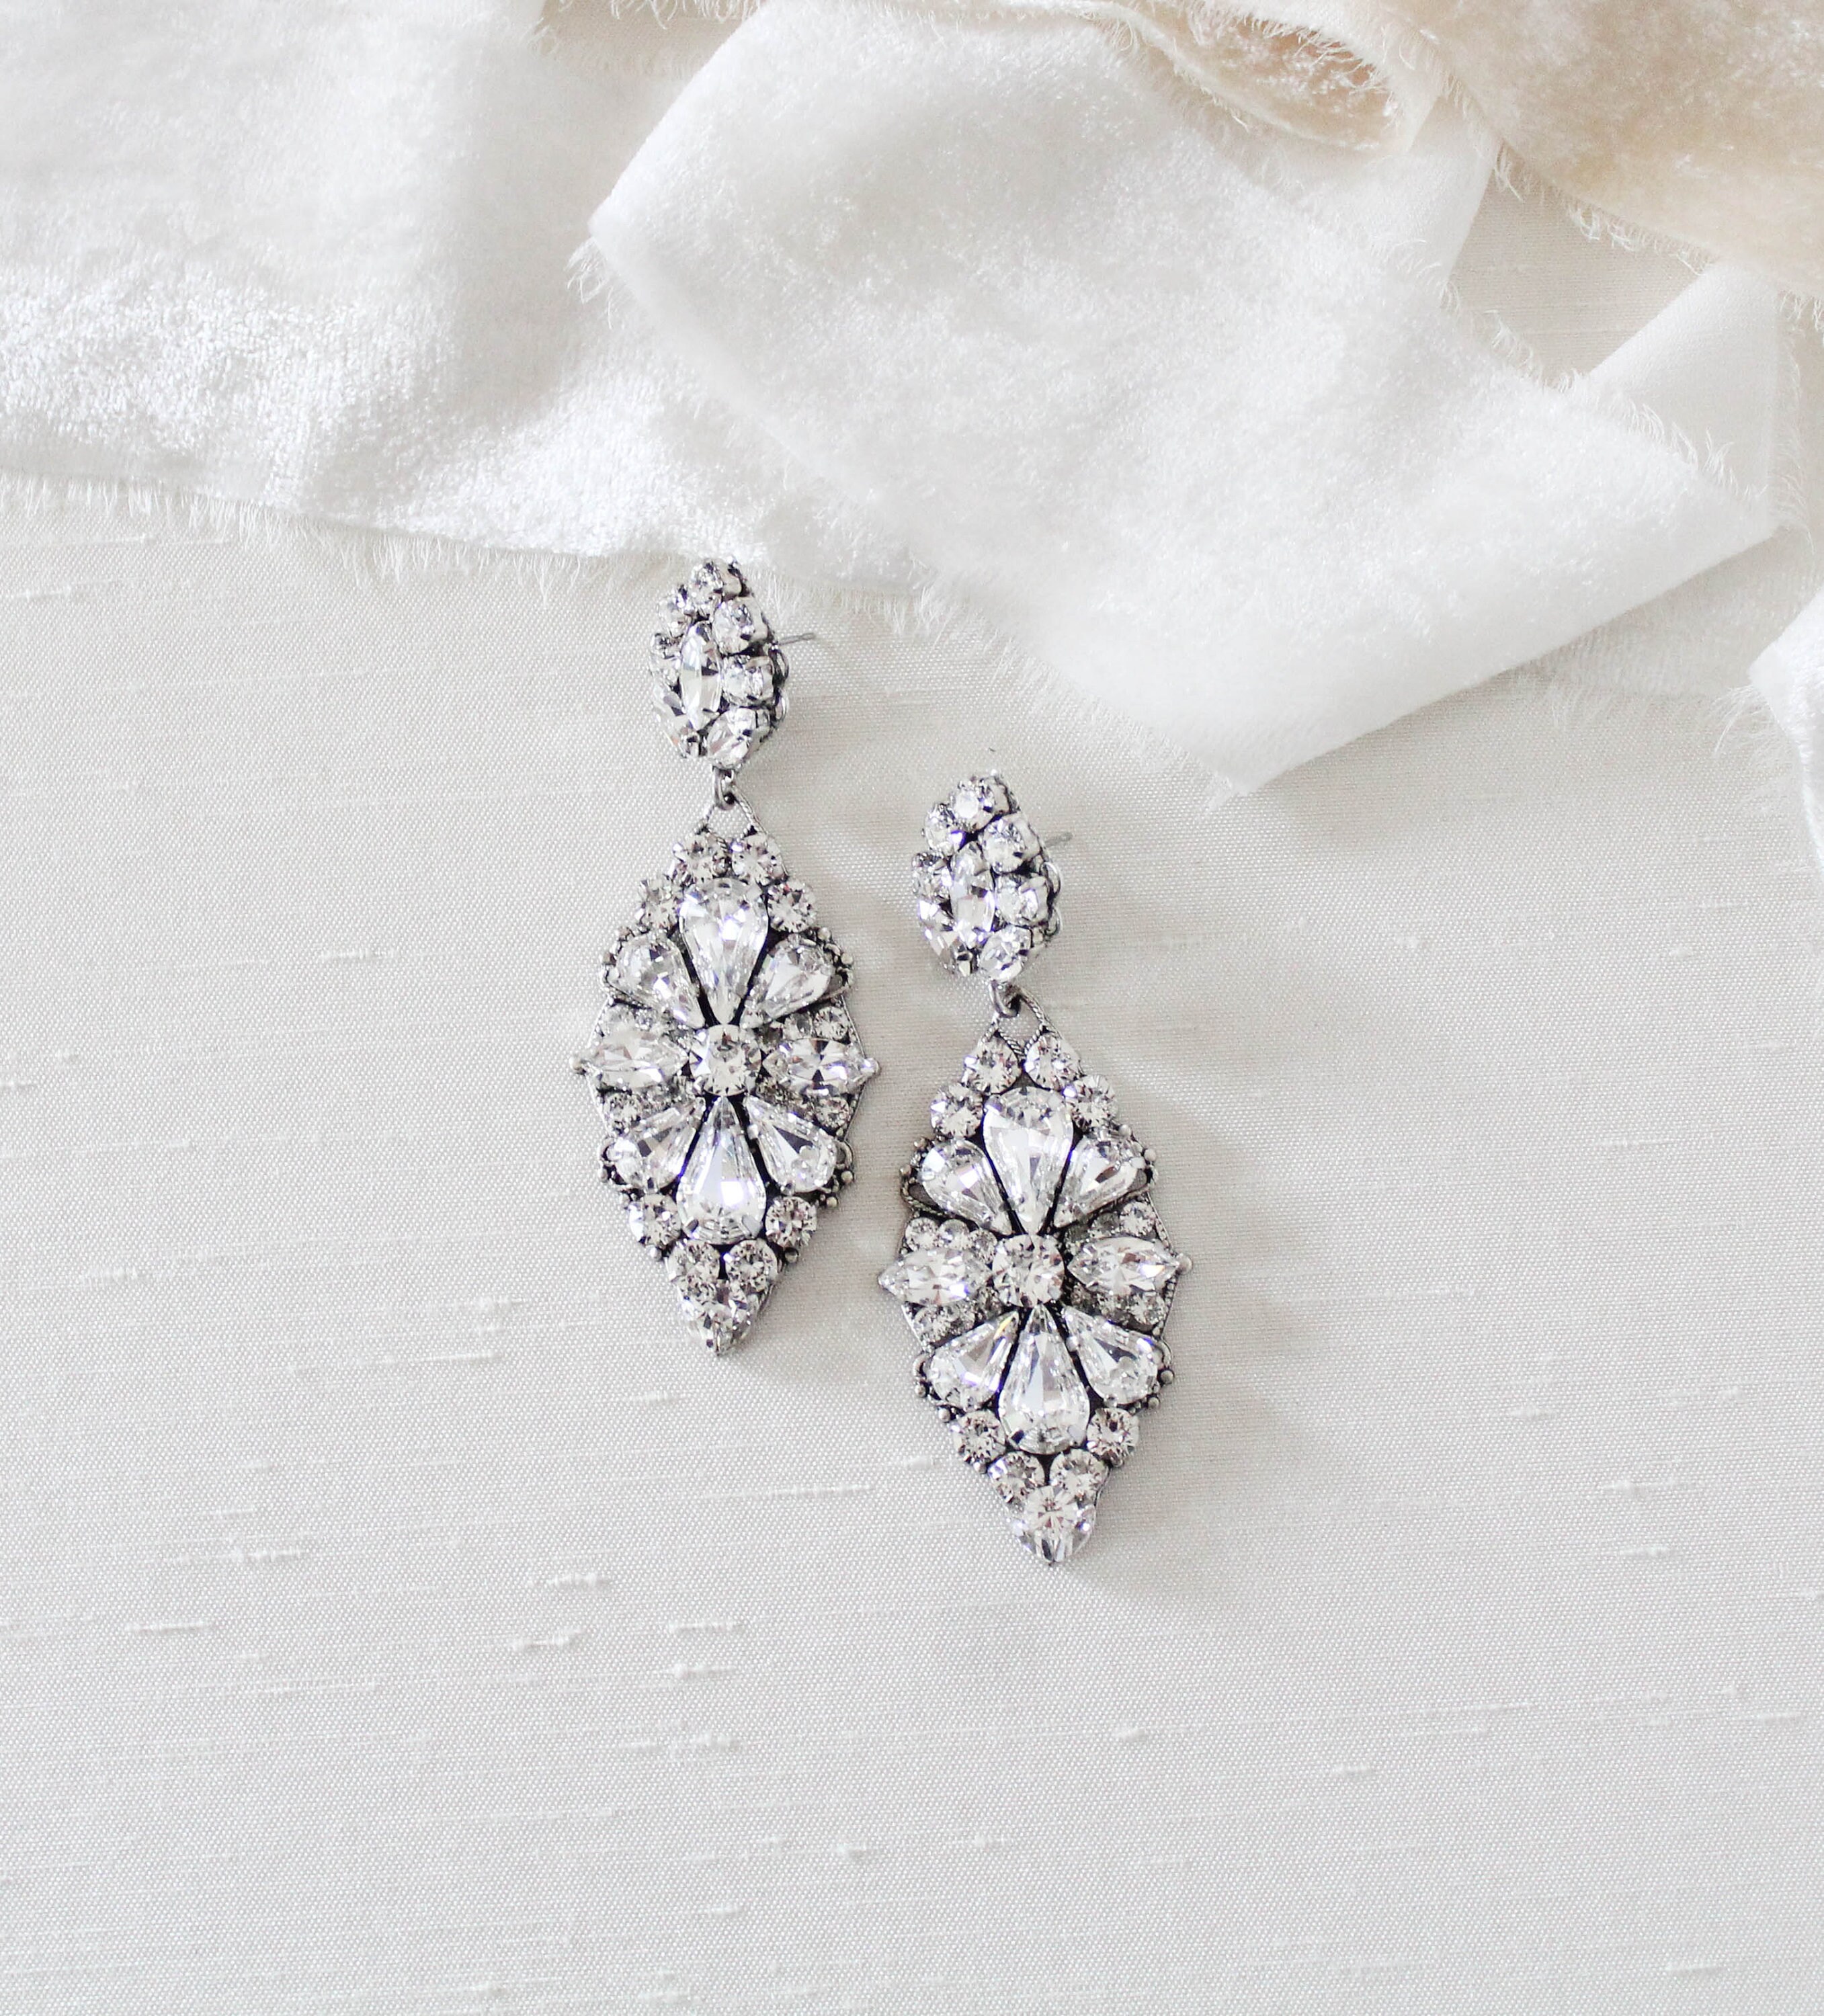 Crystal Bridal Earrings Statement Wedding Earrings Bridal | Etsy